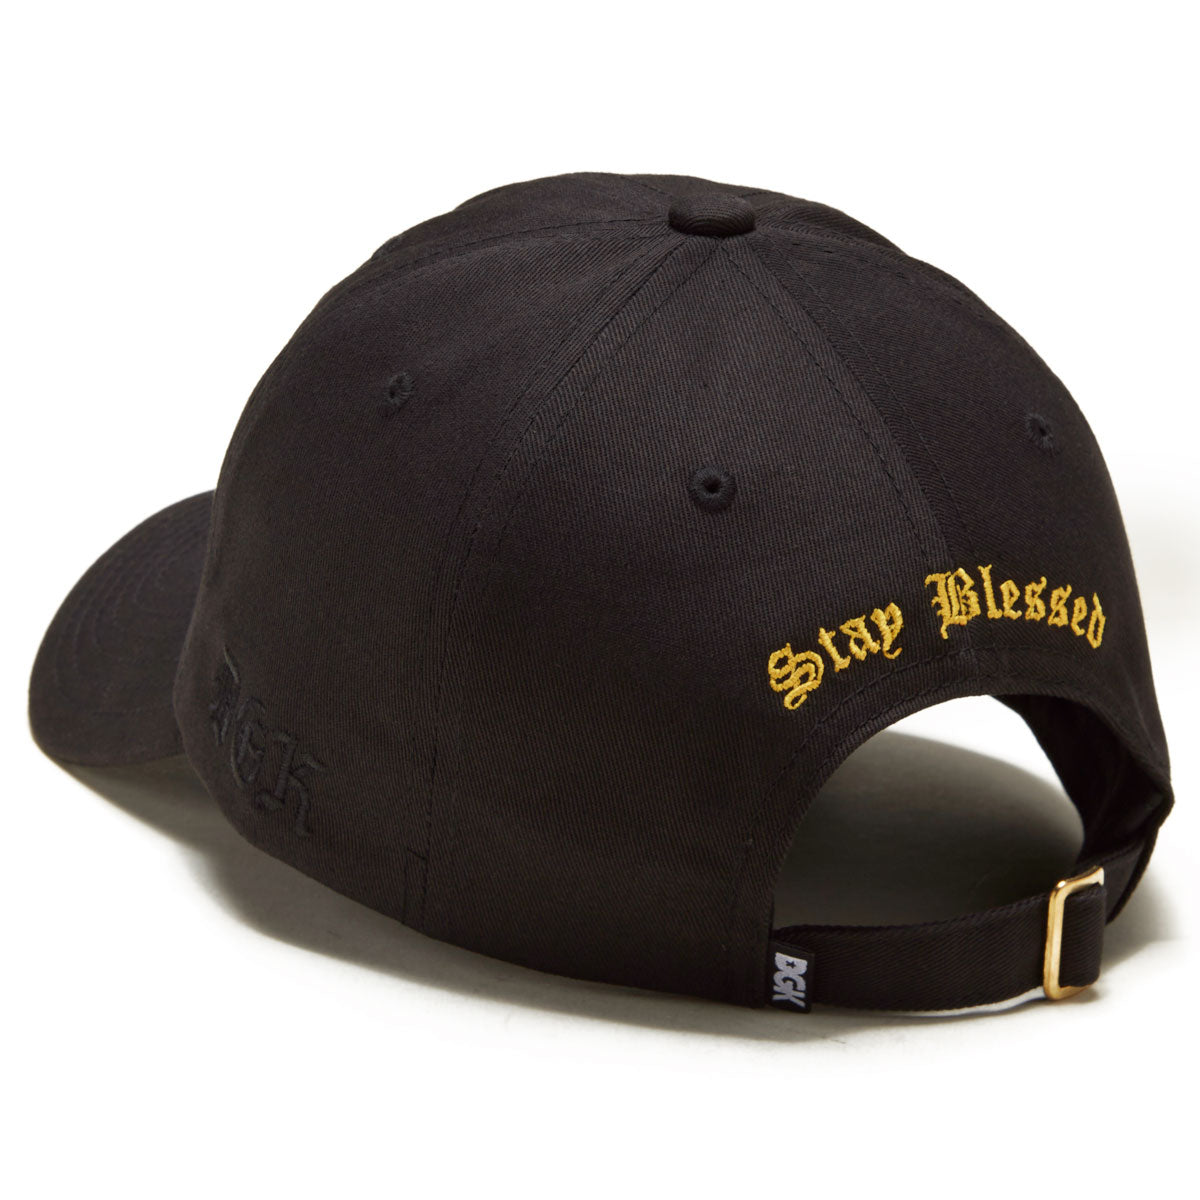 DGK Stay Blessed Strapback Hat - Black image 2